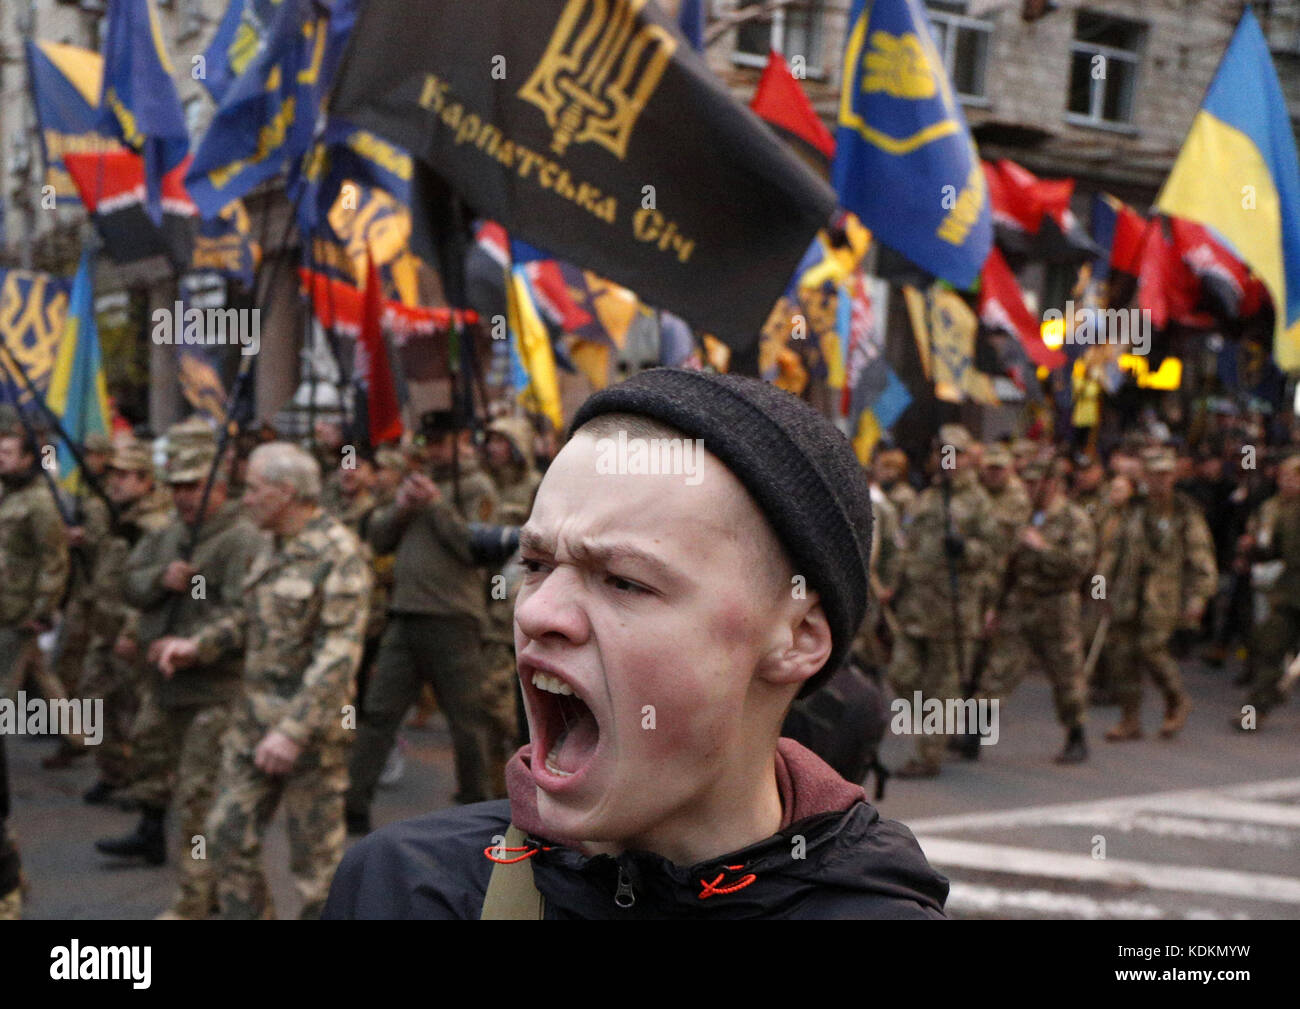 Украинцы бандеровцы. Украинские националисты. Украинские нацисты. Хохлы националисты. Лицо украинца.